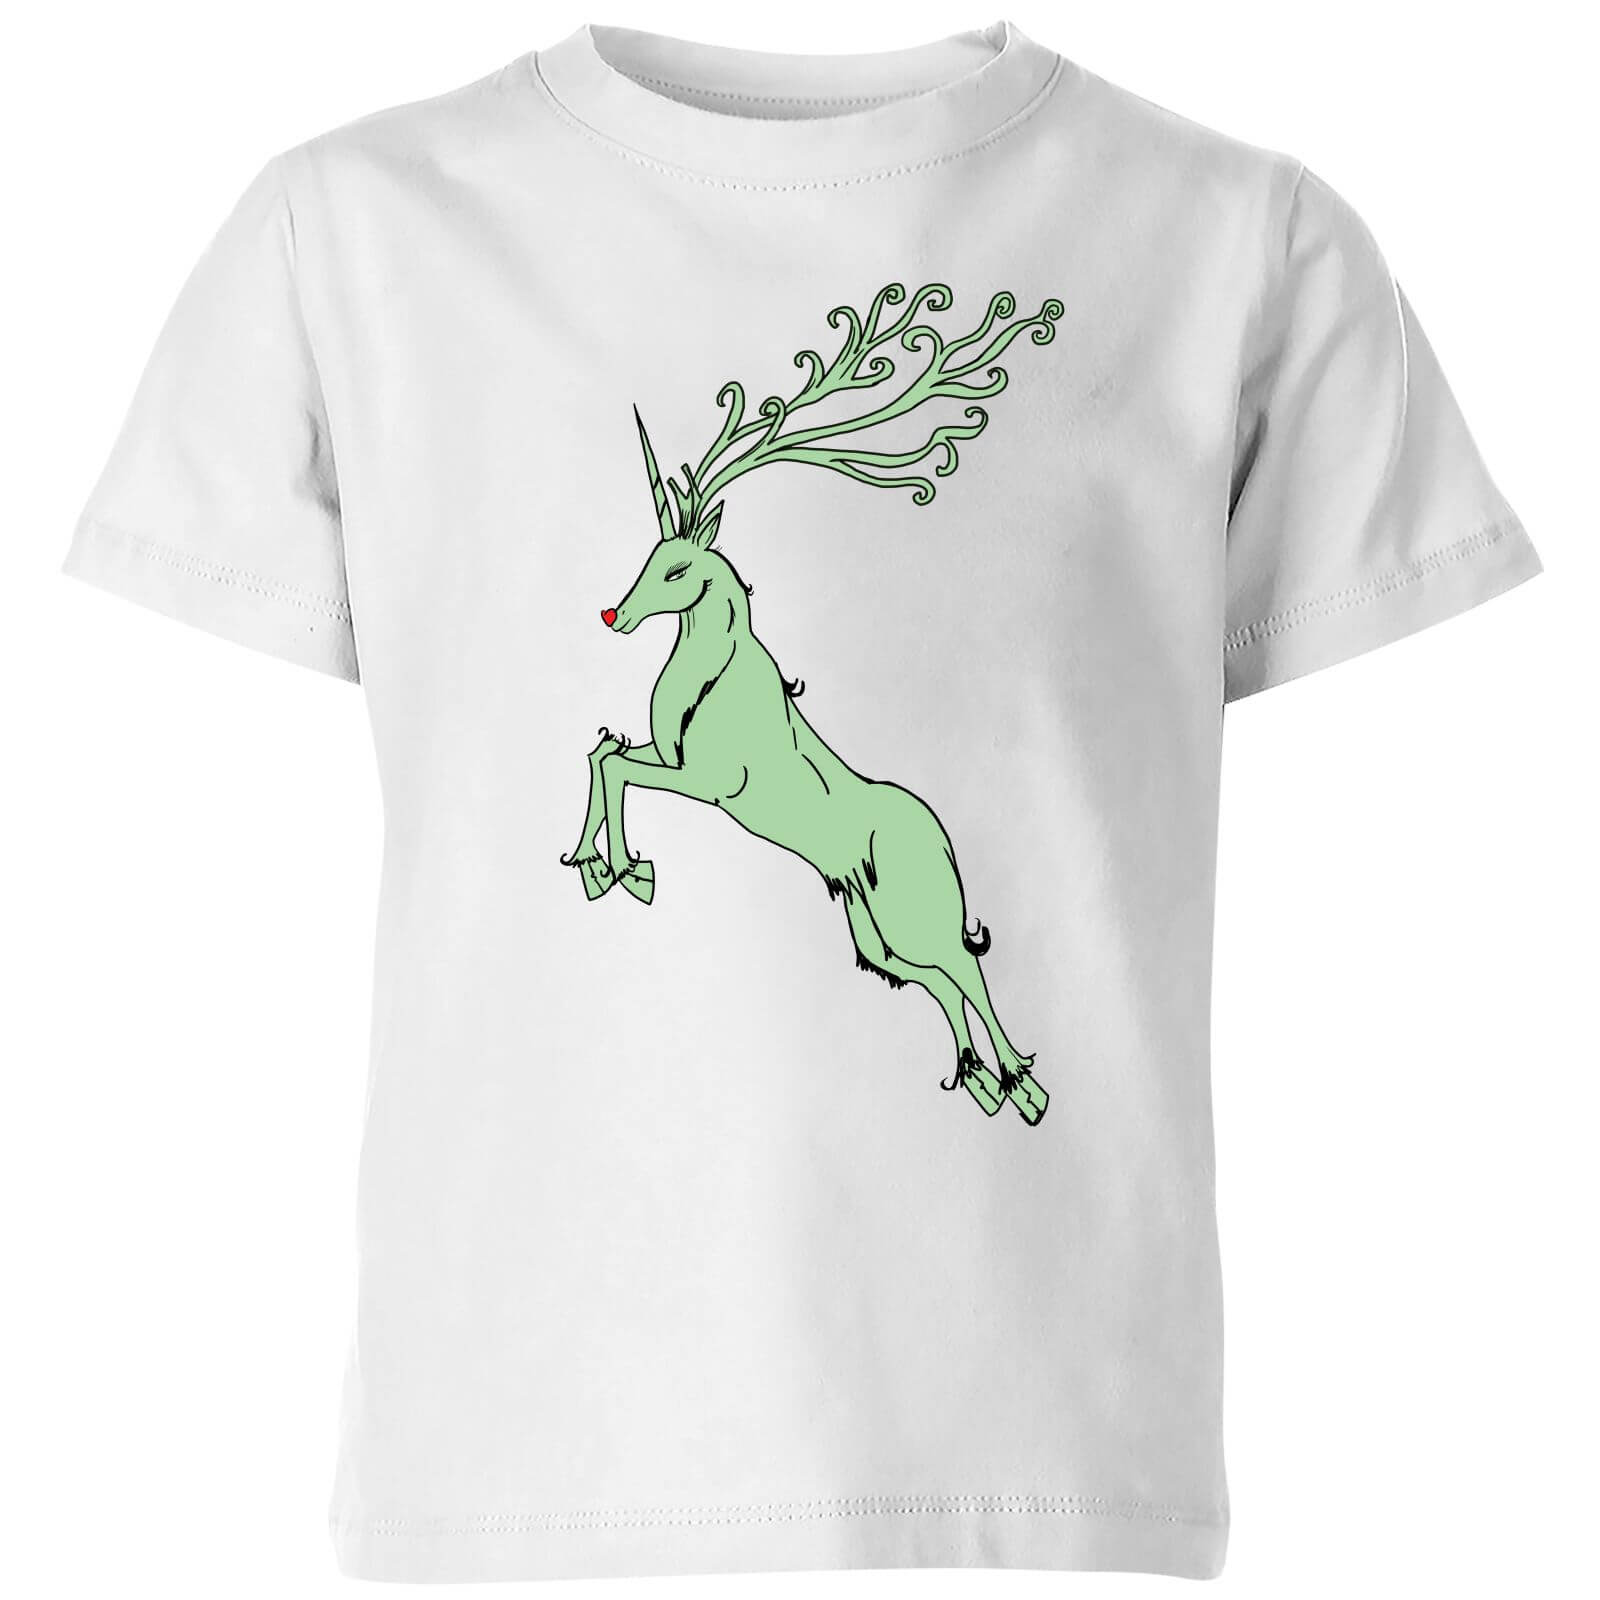 Green Rudolph Kids' T-Shirt - White - 3-4 Years - White